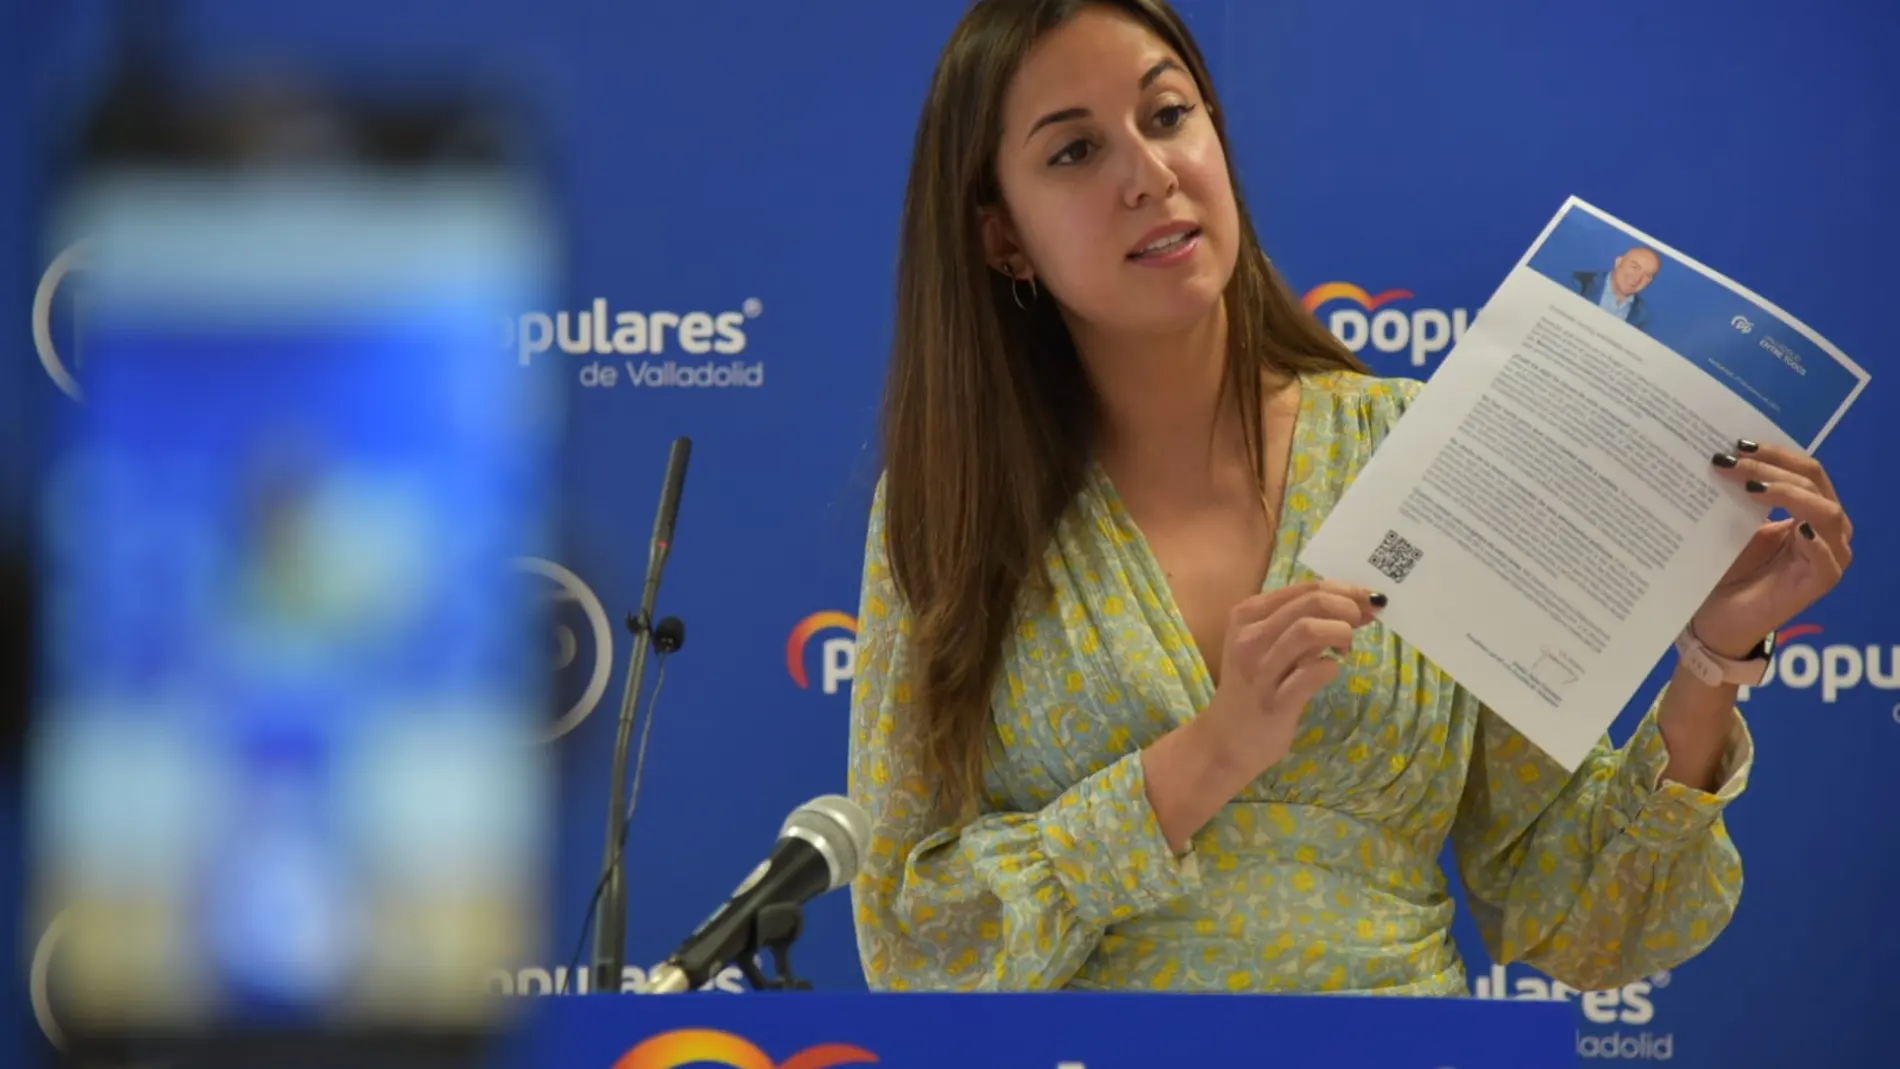 La portavoz de la campaña del candidato a la alcaldía de Valladolid, Blanca Jiménez Cuadrillero